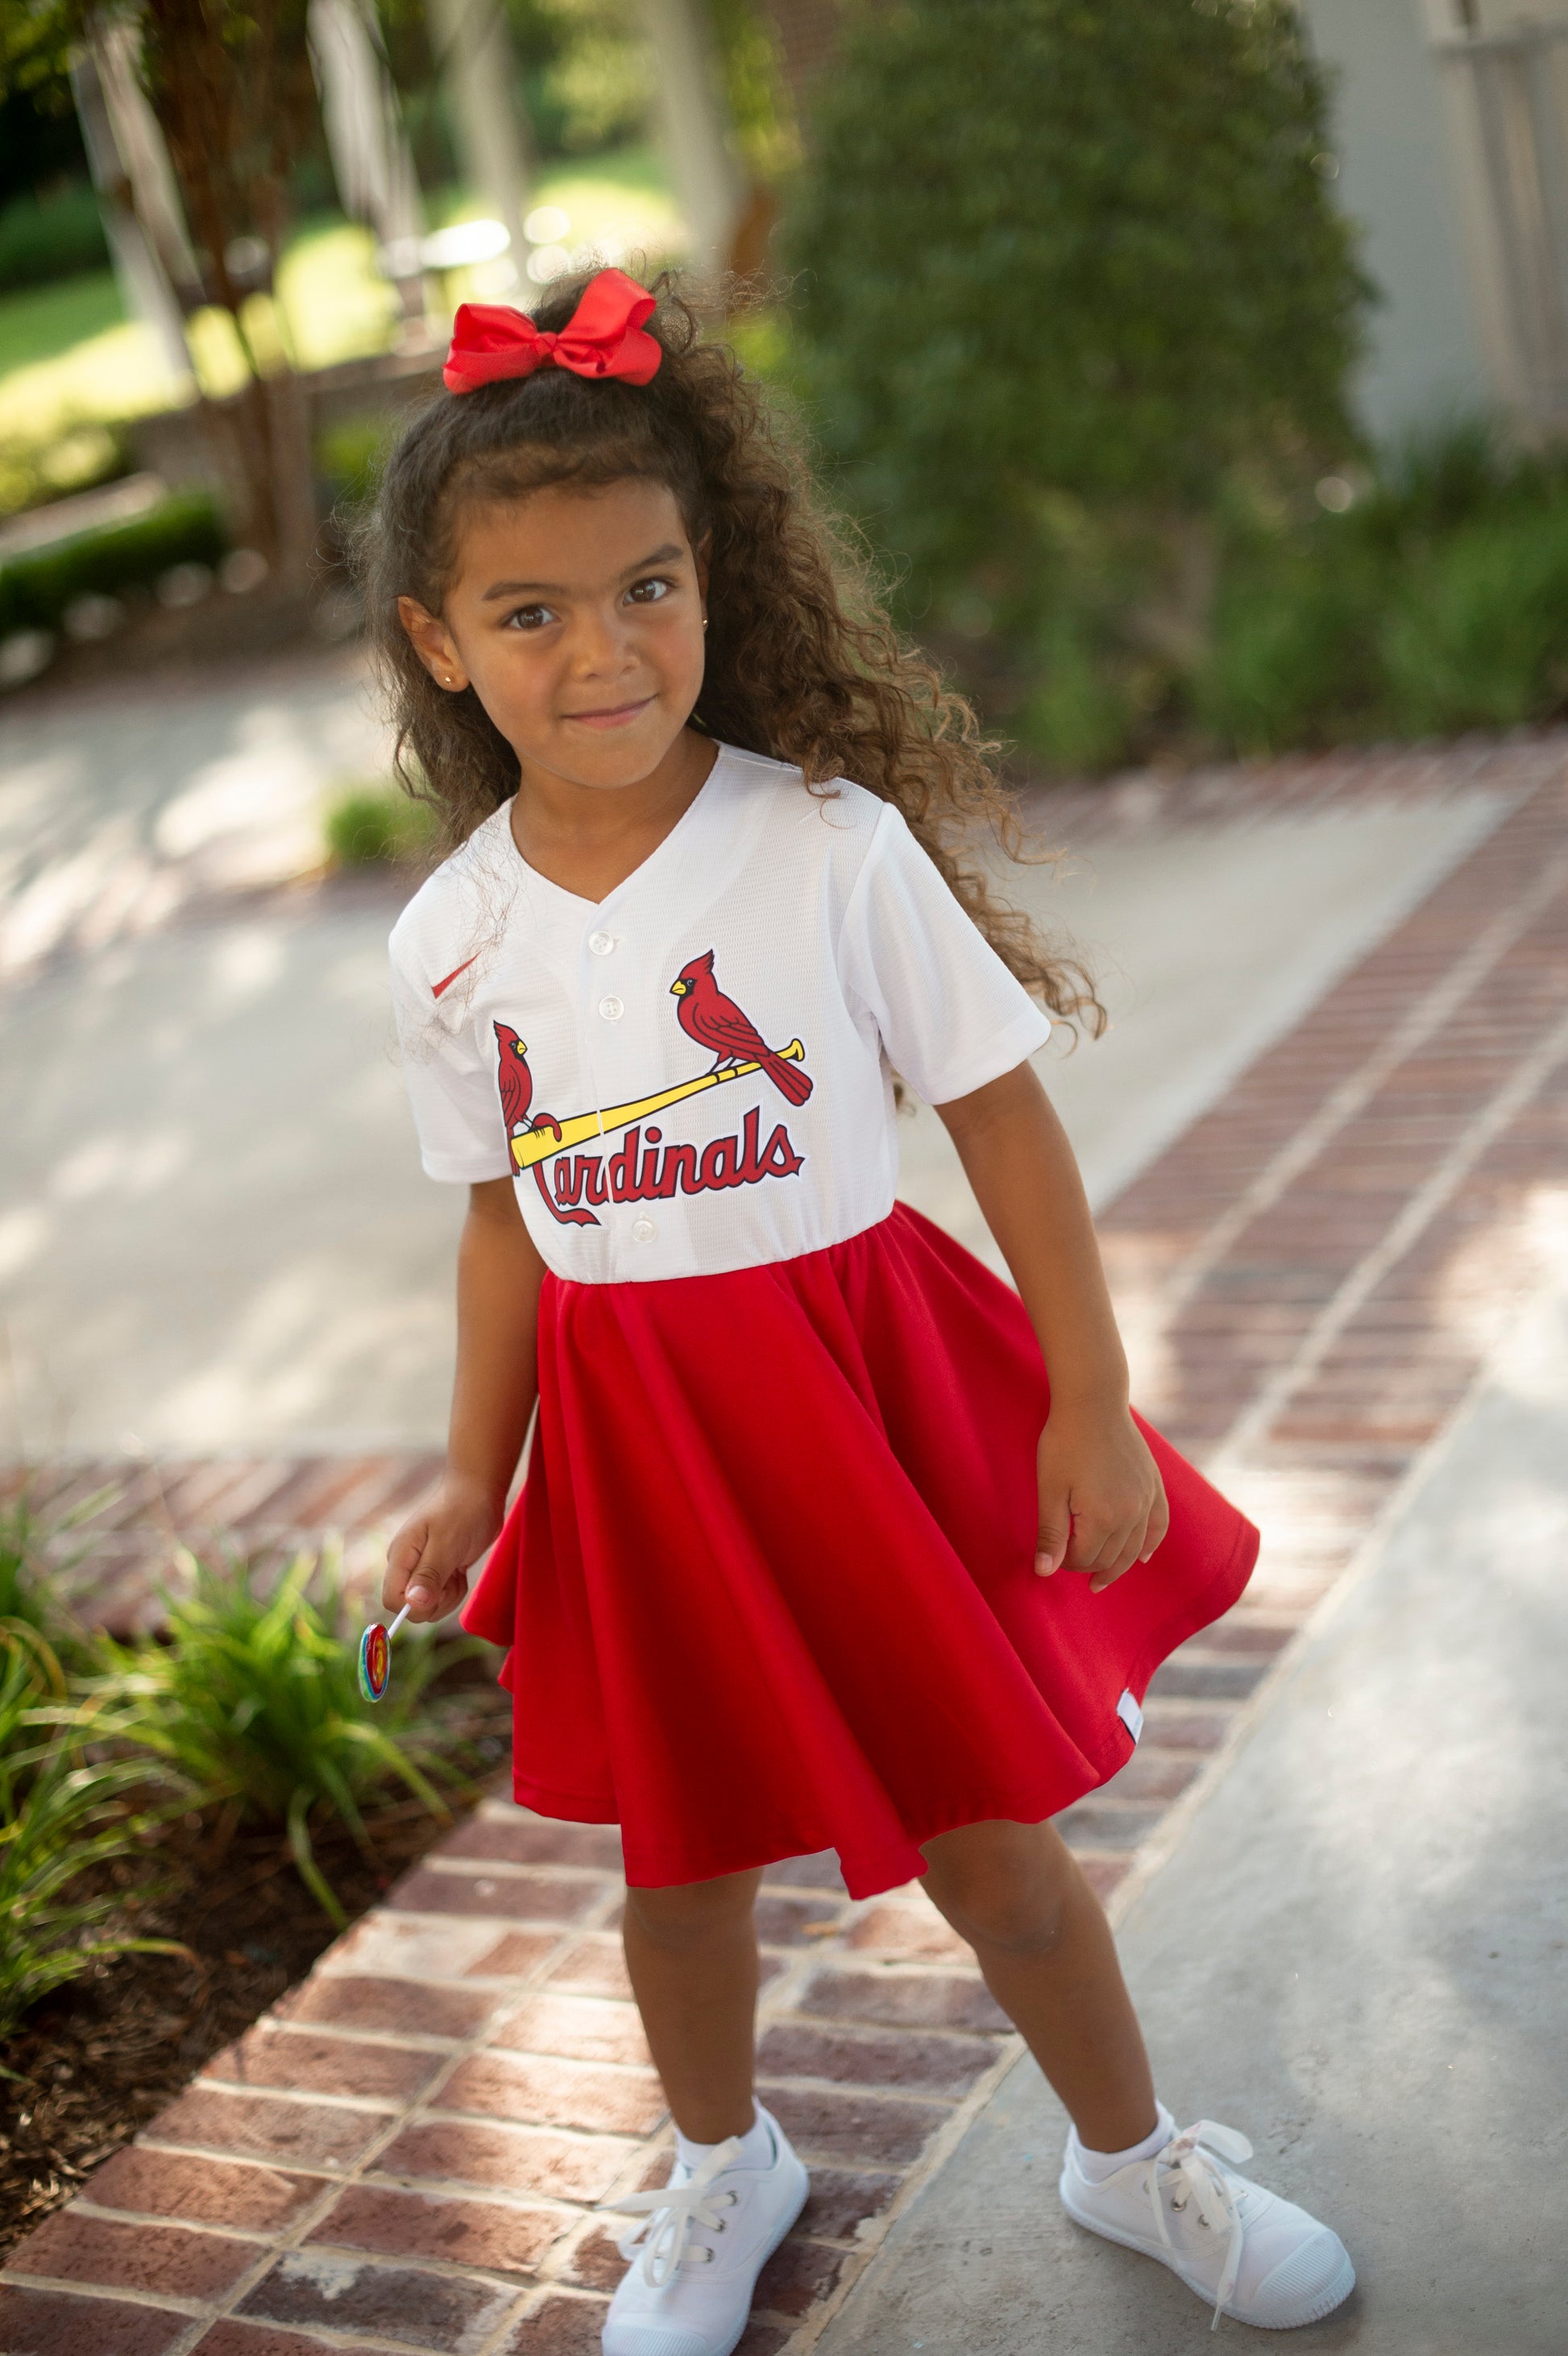 St. Louis Cardinals Women MLB Jerseys for sale